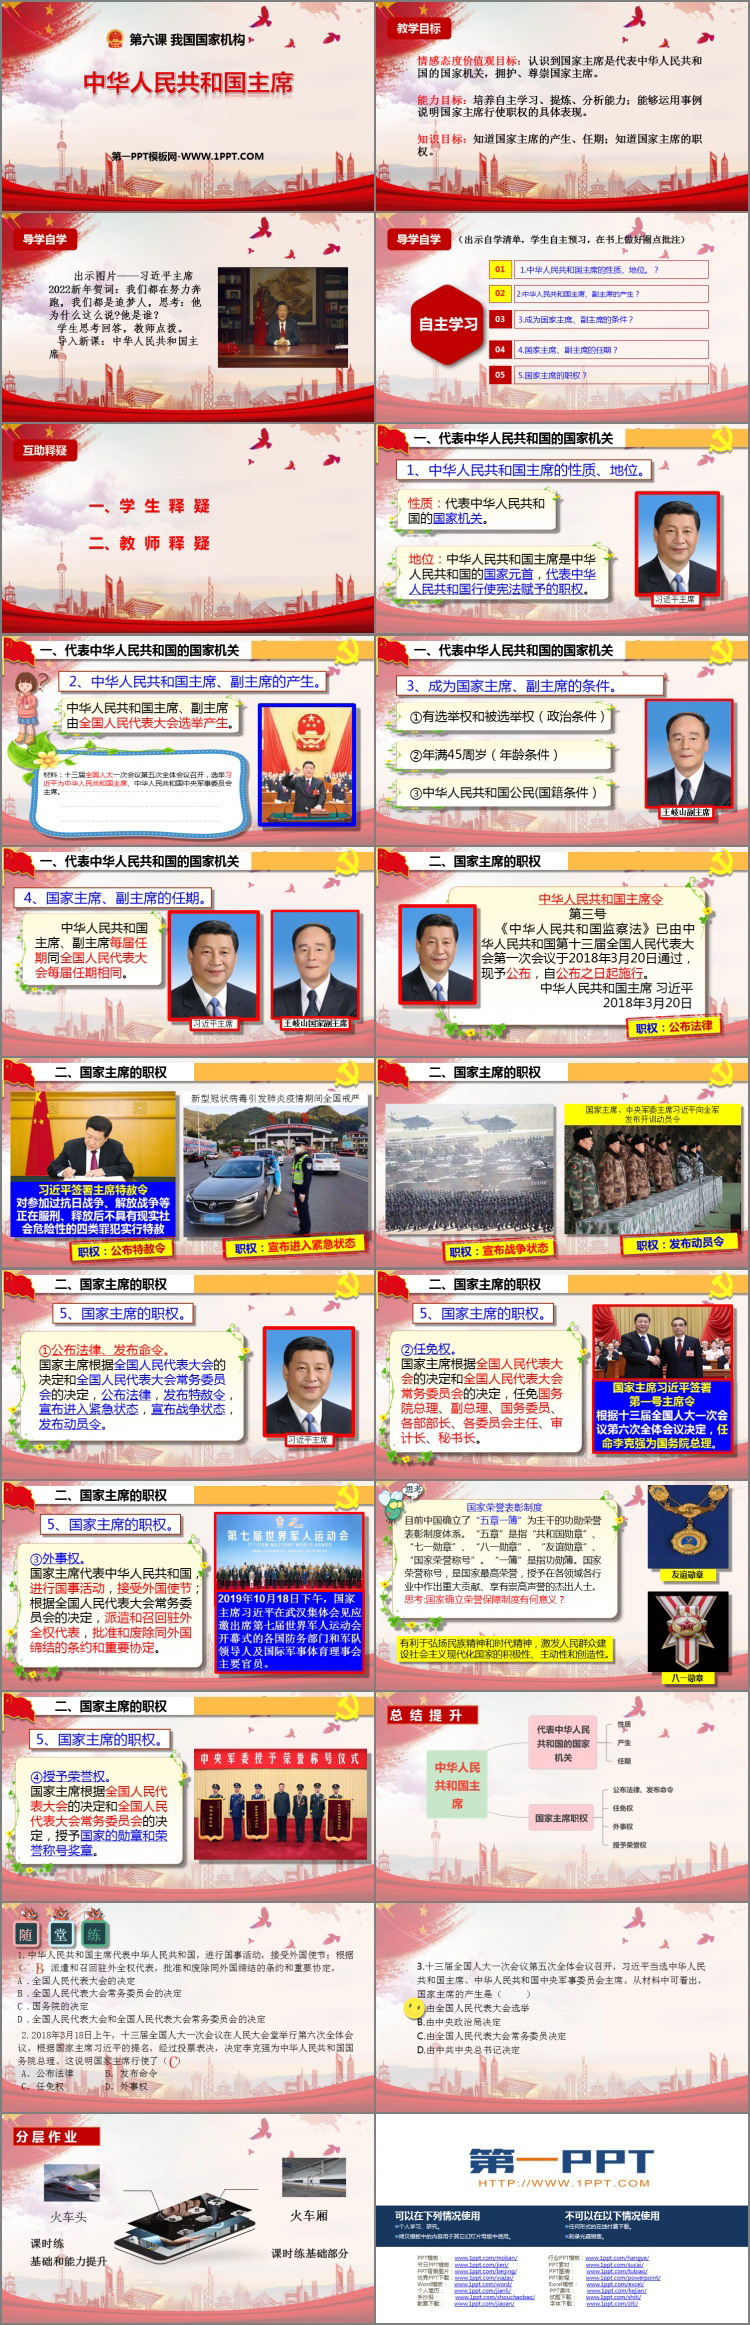 《中华人民共和国主席》PPT教学课件下载-预览图02